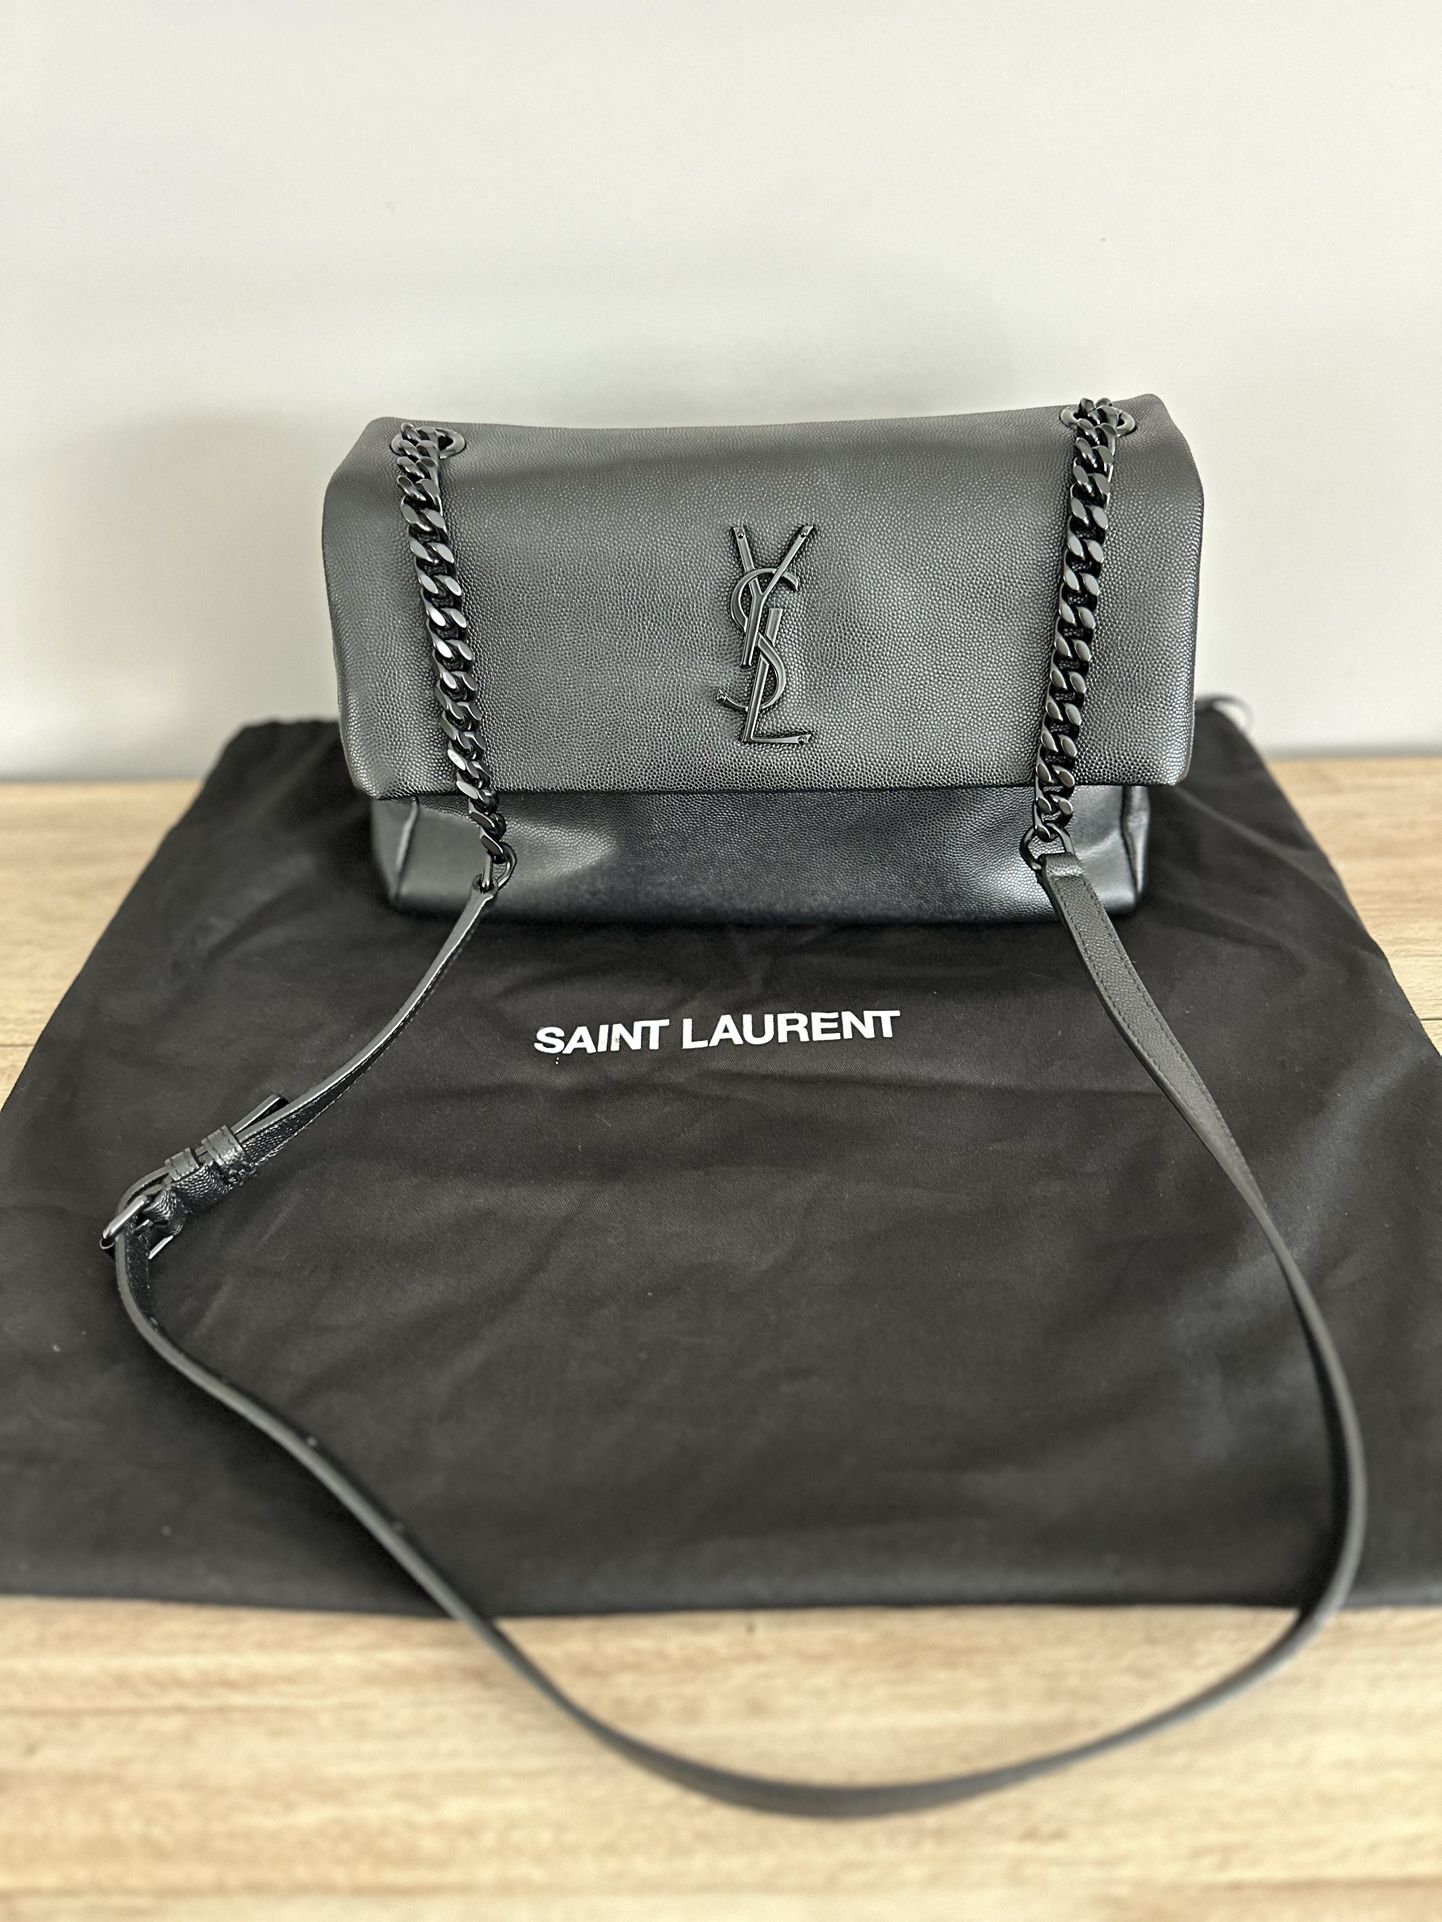 Saint Laurent YSL Black Chain Emblem Purse 